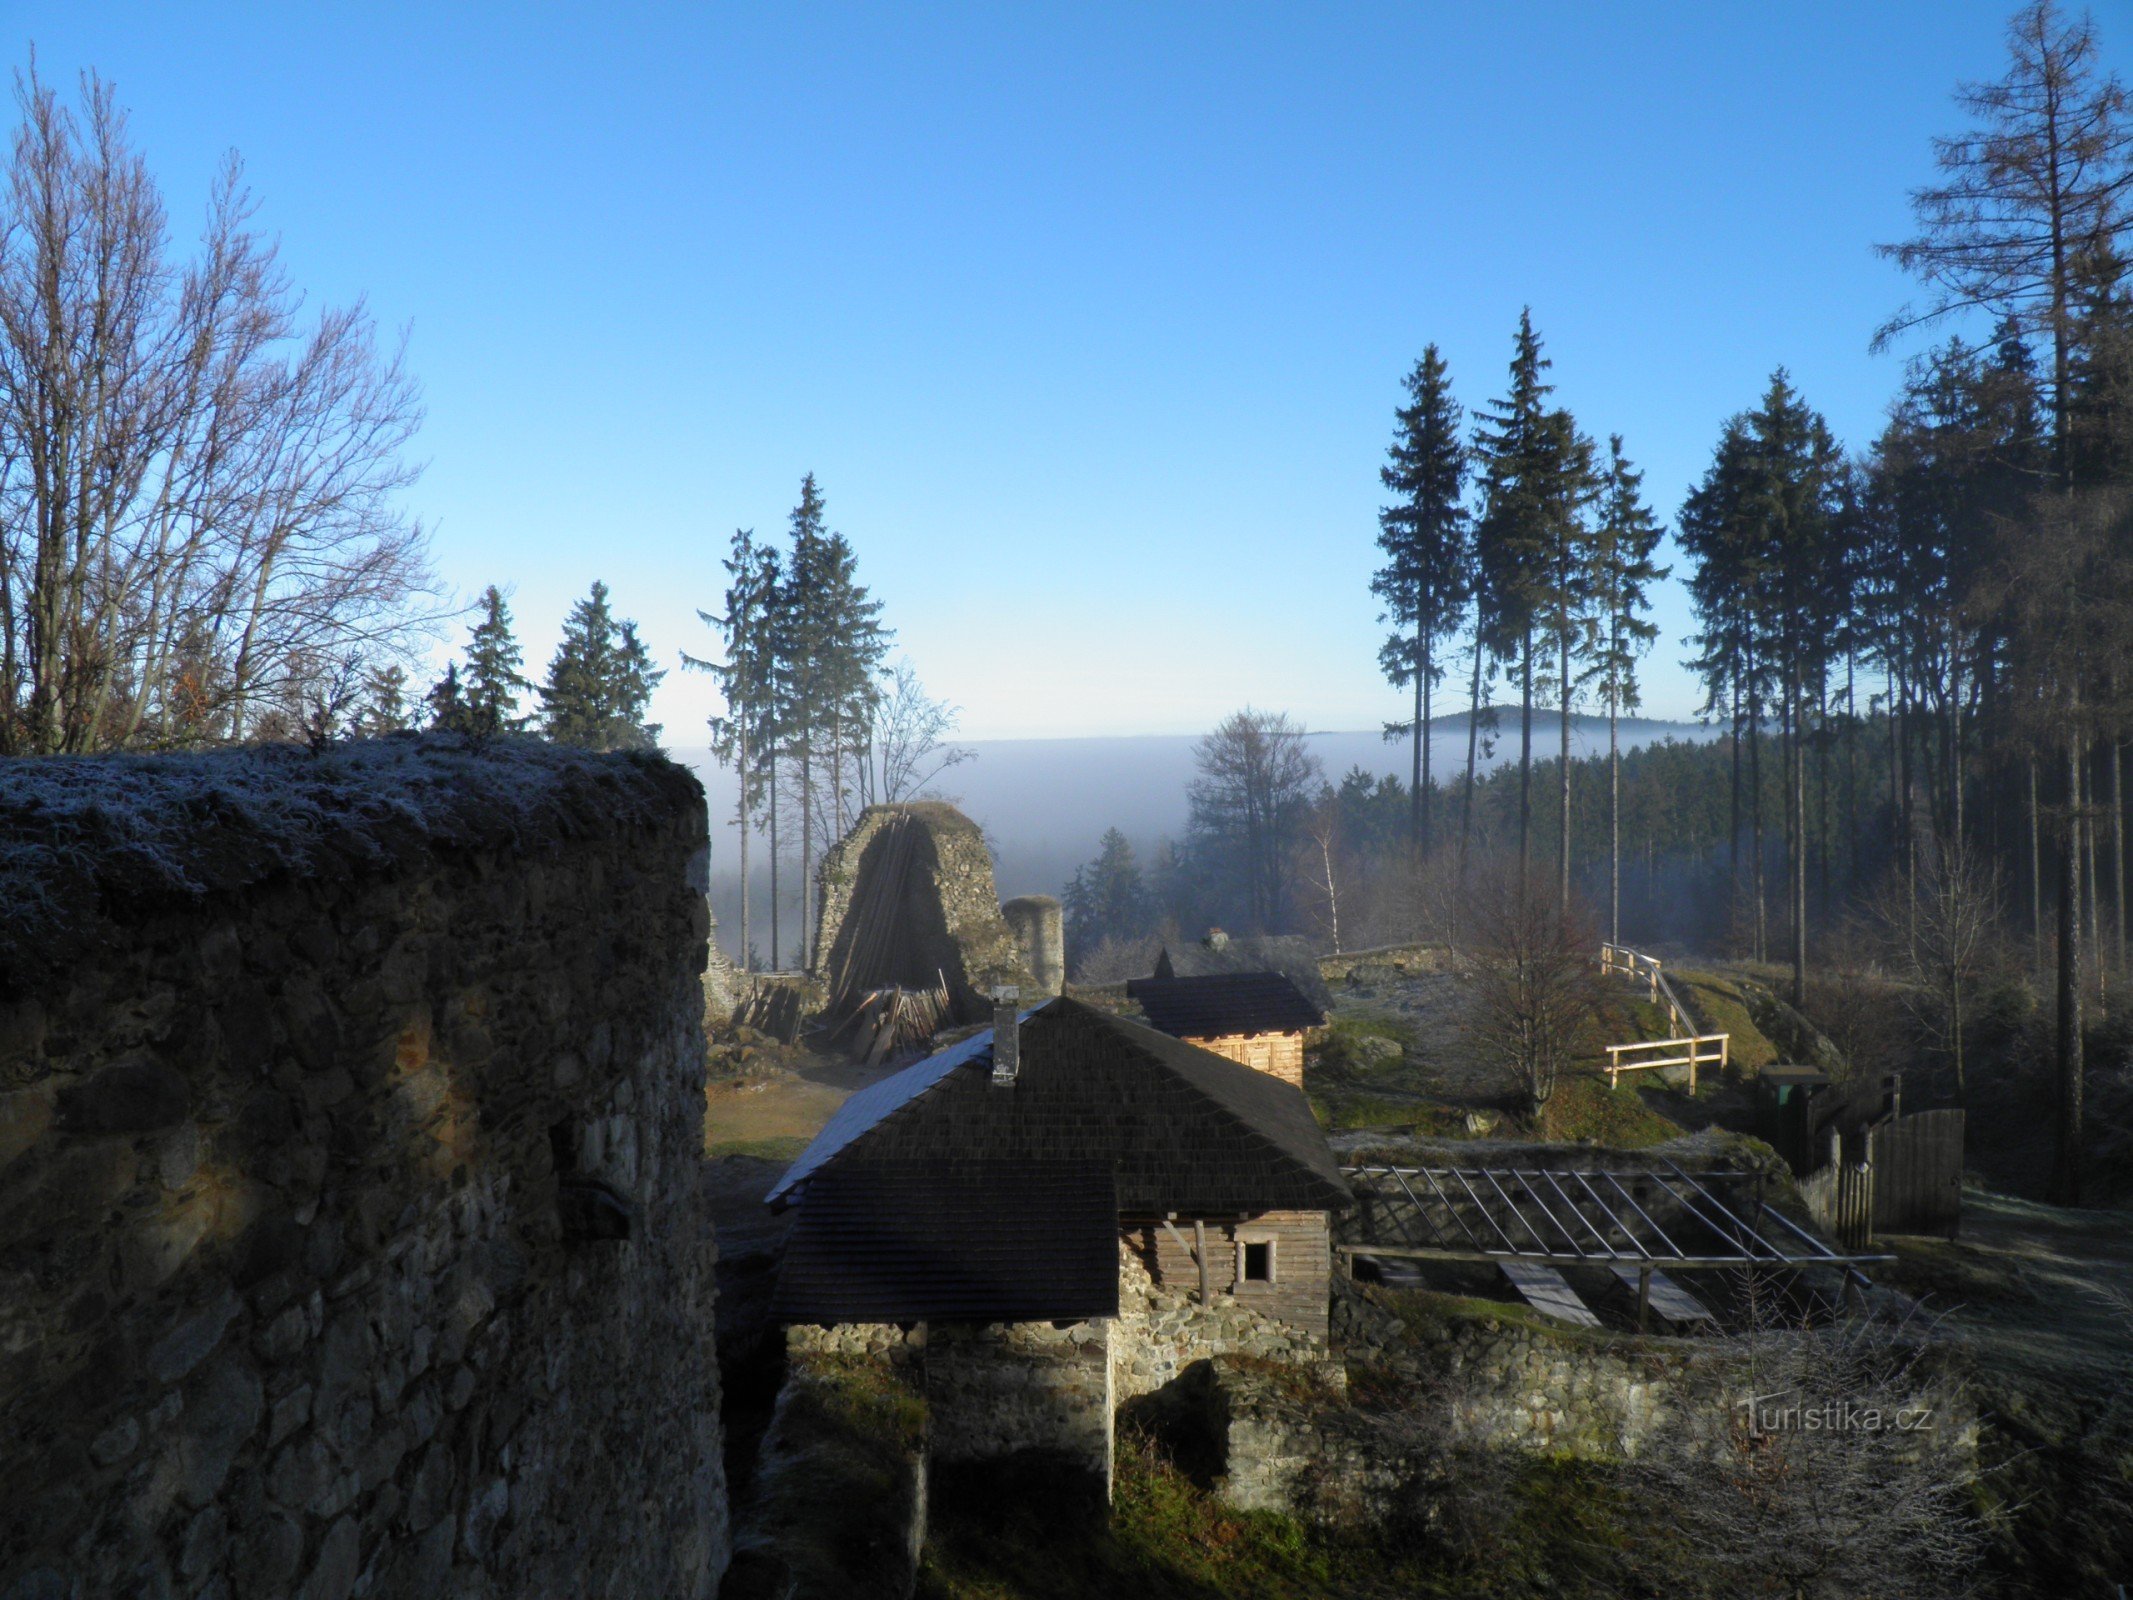 Passeggiata invernale intorno al castello di Orlíka.